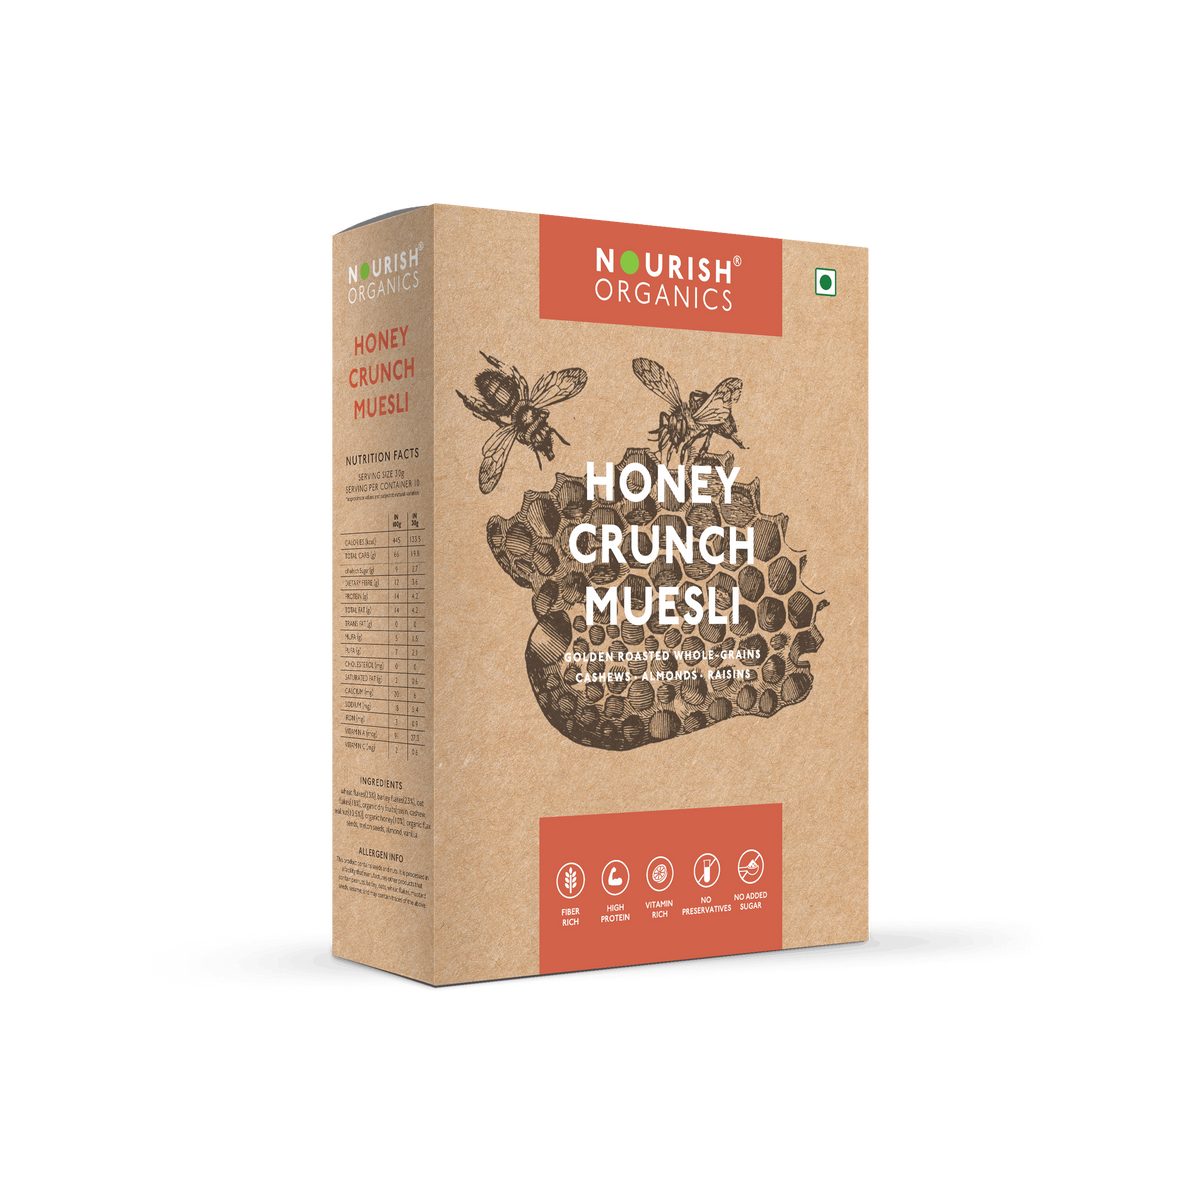 Nourish Organics Honey Crunch Muesli Image